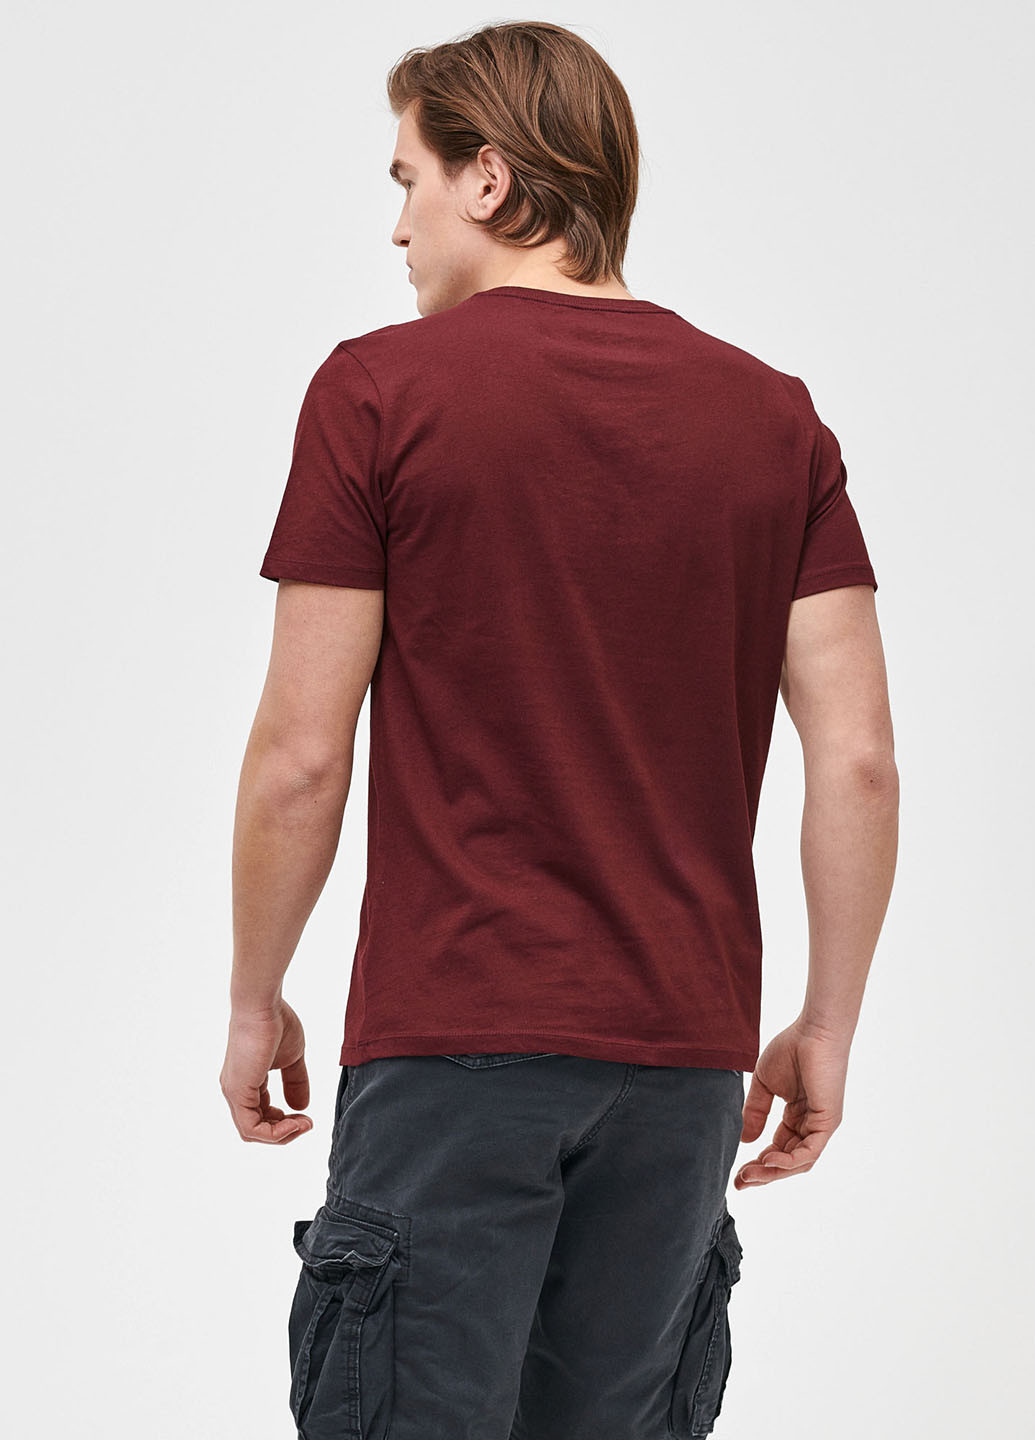 Комбинированная футболка (2 шт.) Gap